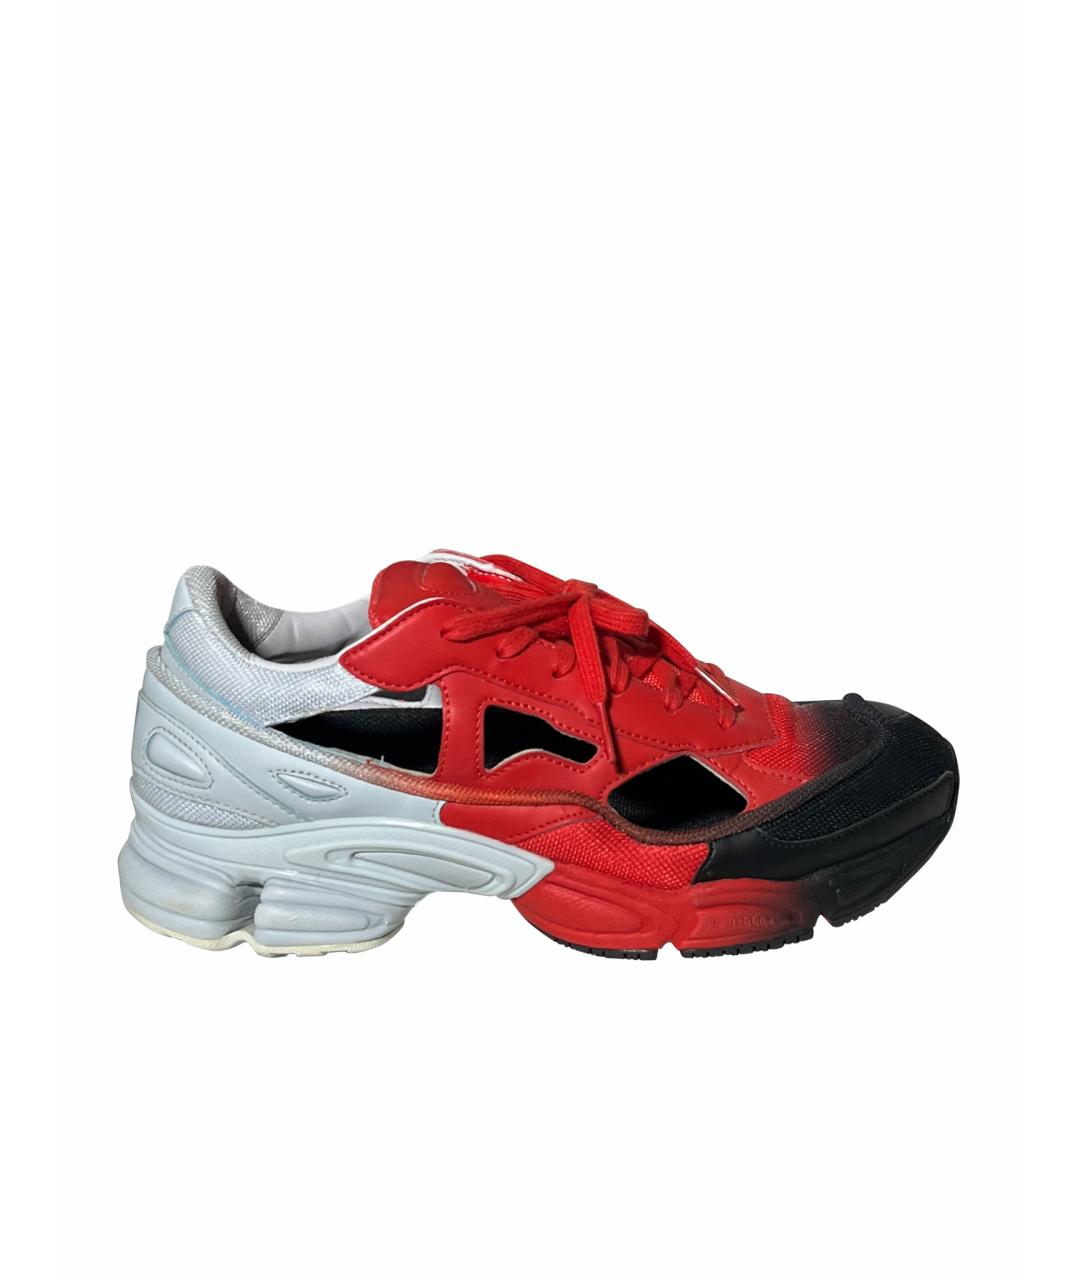 ADIDAS X RAF SIMONS Красные кожаные низкие кроссовки / кеды, фото 1